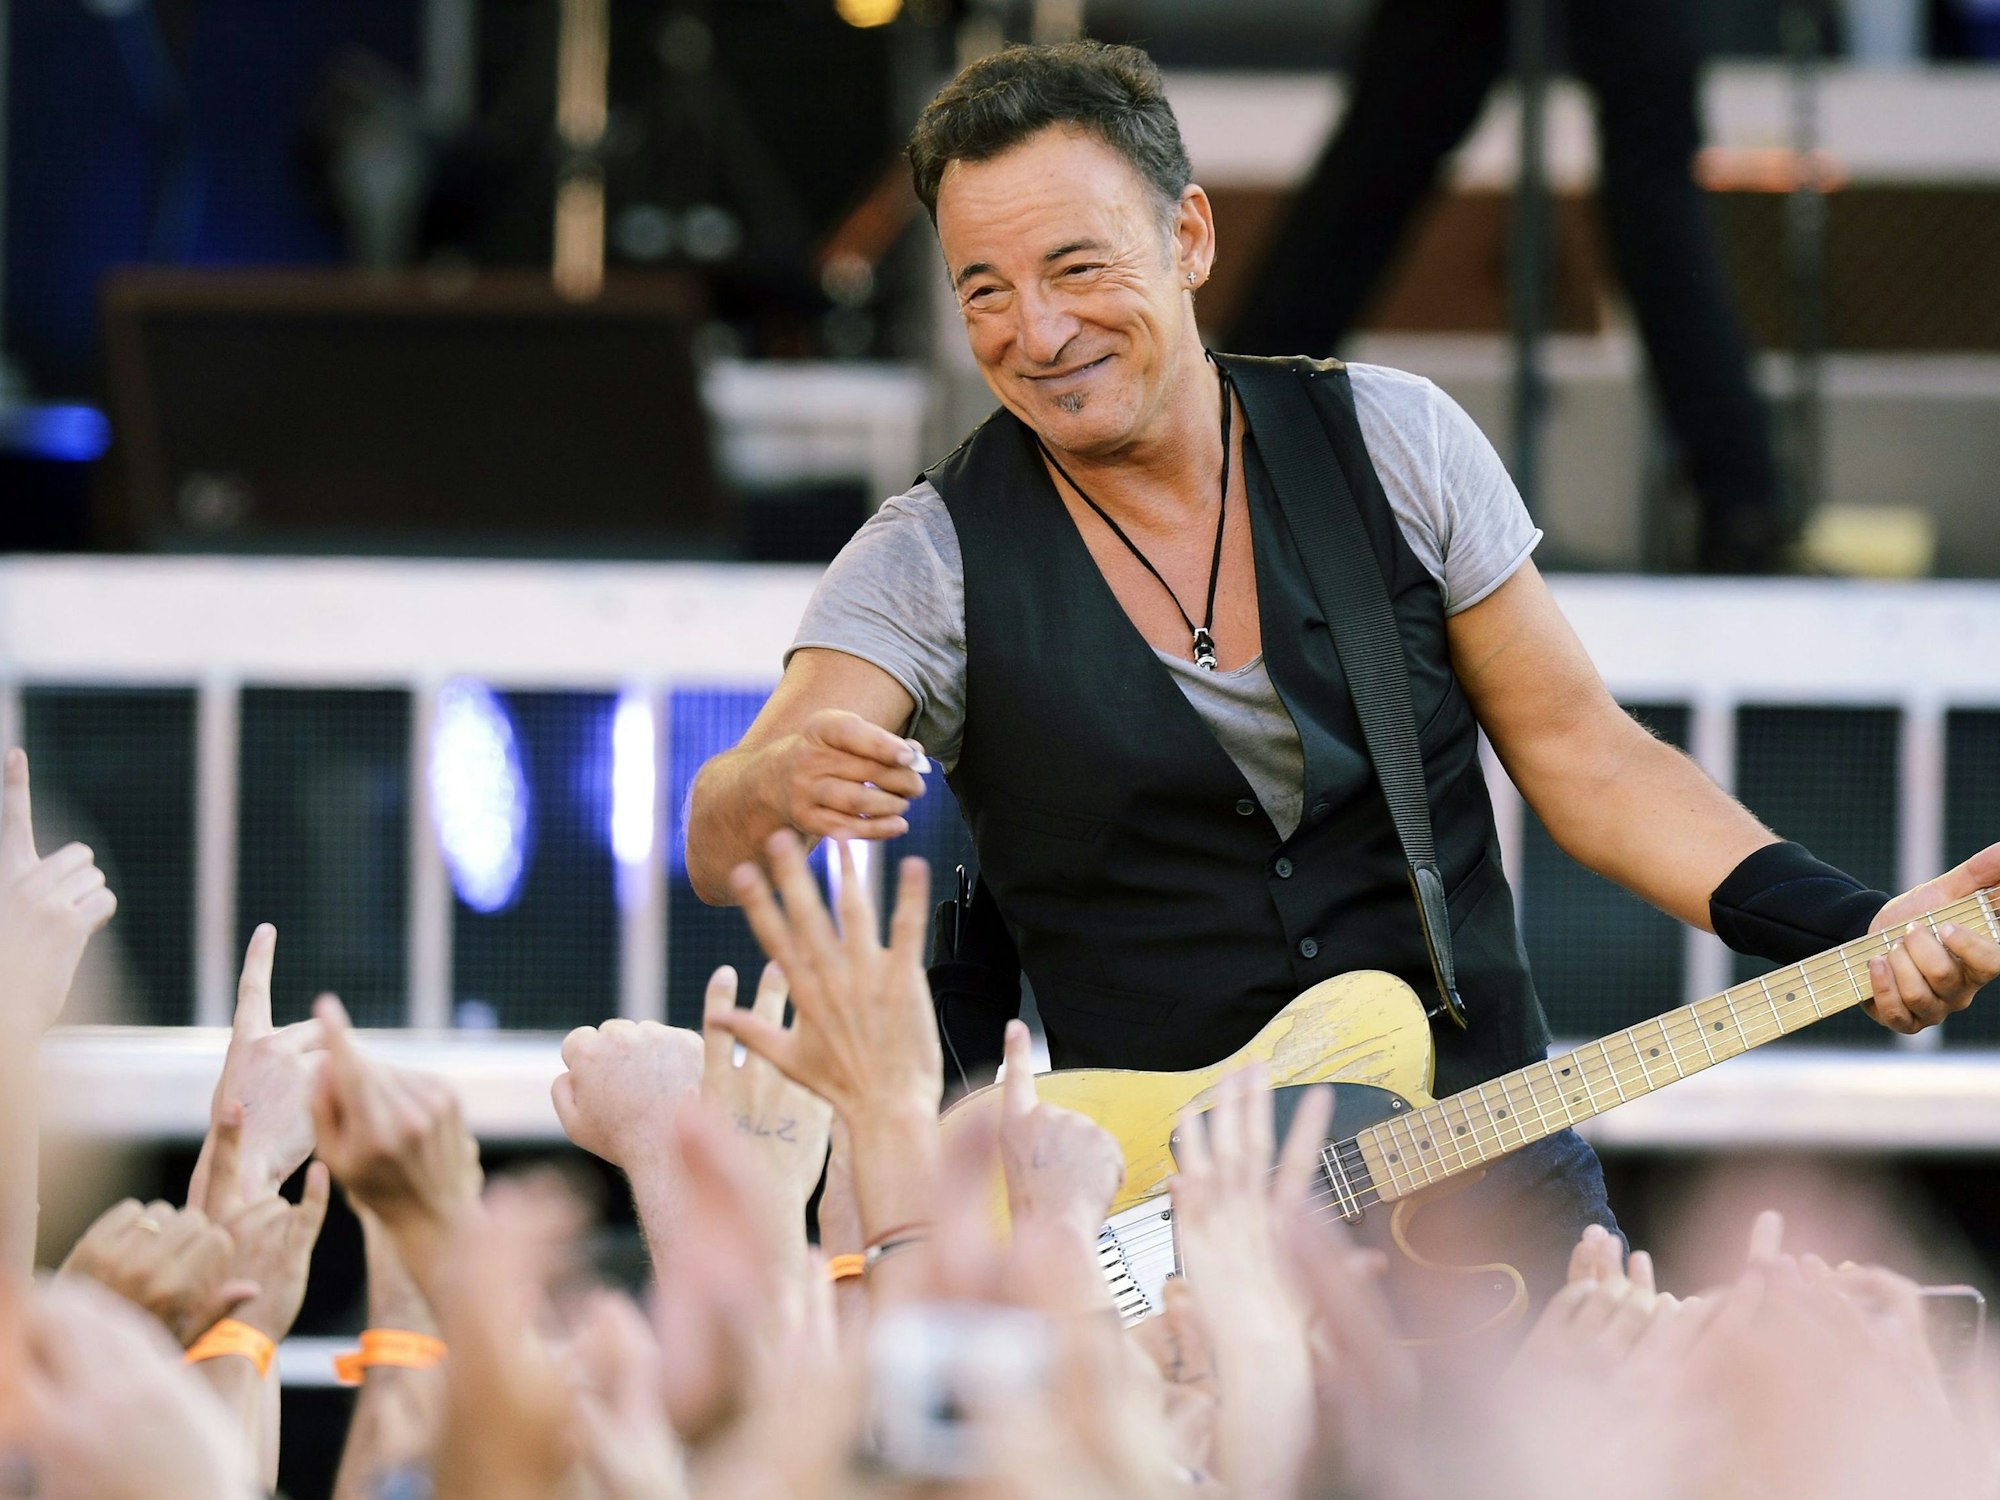 Bruce Springsteen lacht bei einem Konzert in der Schweiz ins Publikum